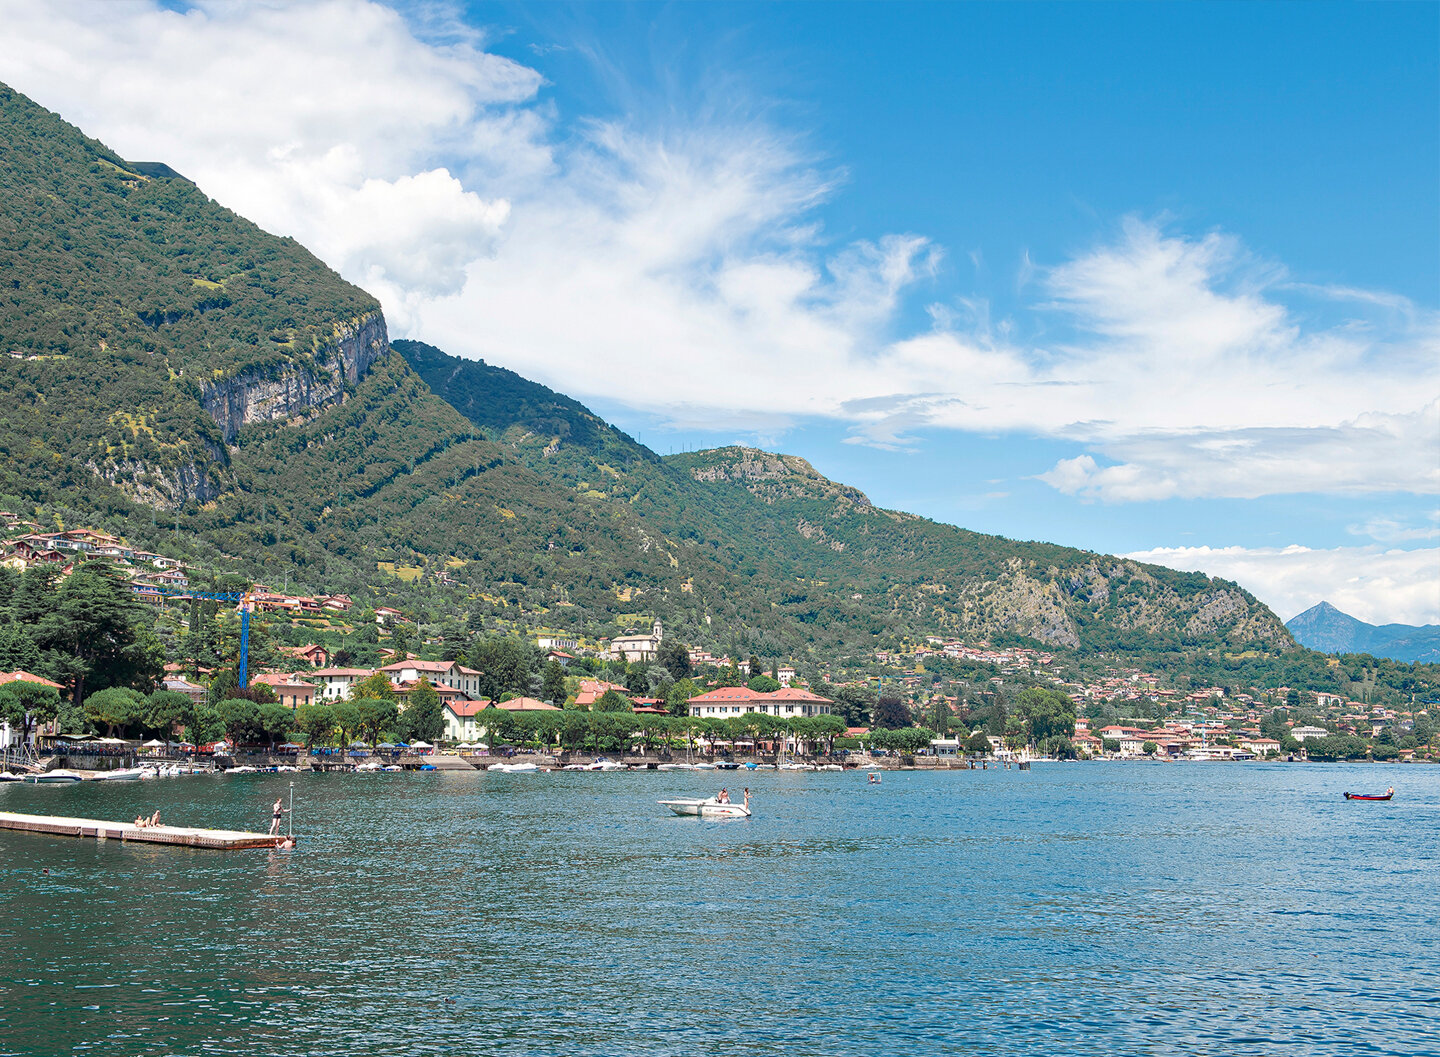 Viwe of Lake Como from Villa del Balbianello